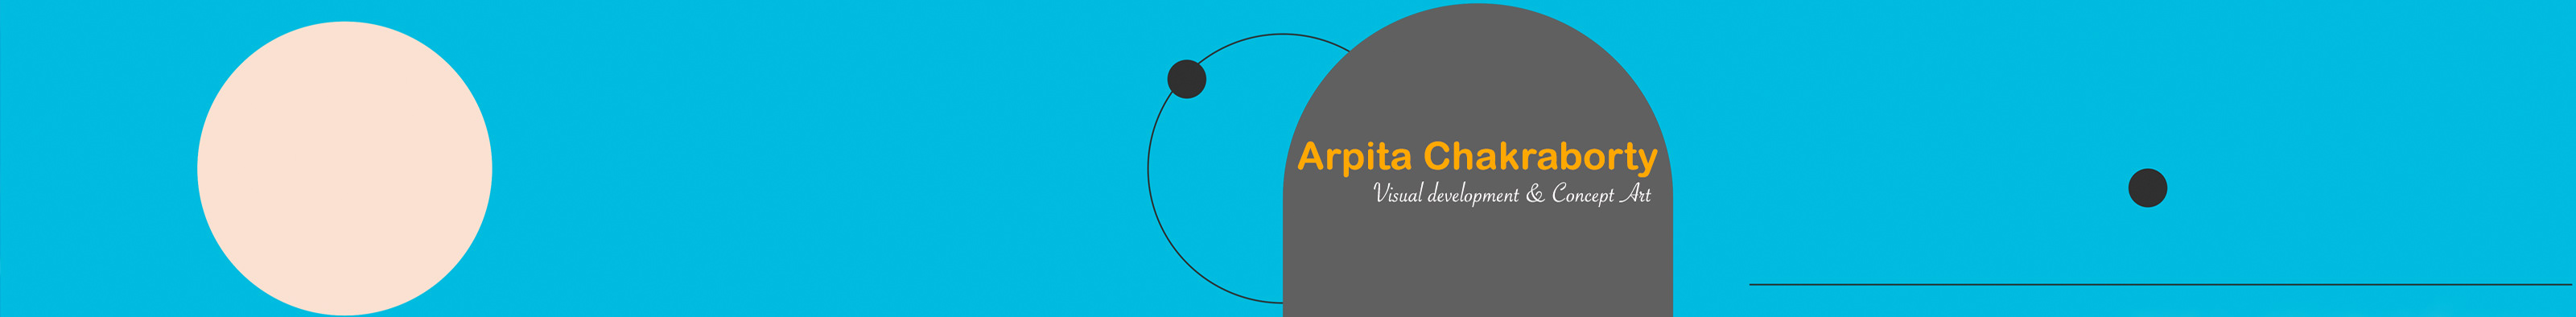 Banner de perfil de Arpita Chakraborty